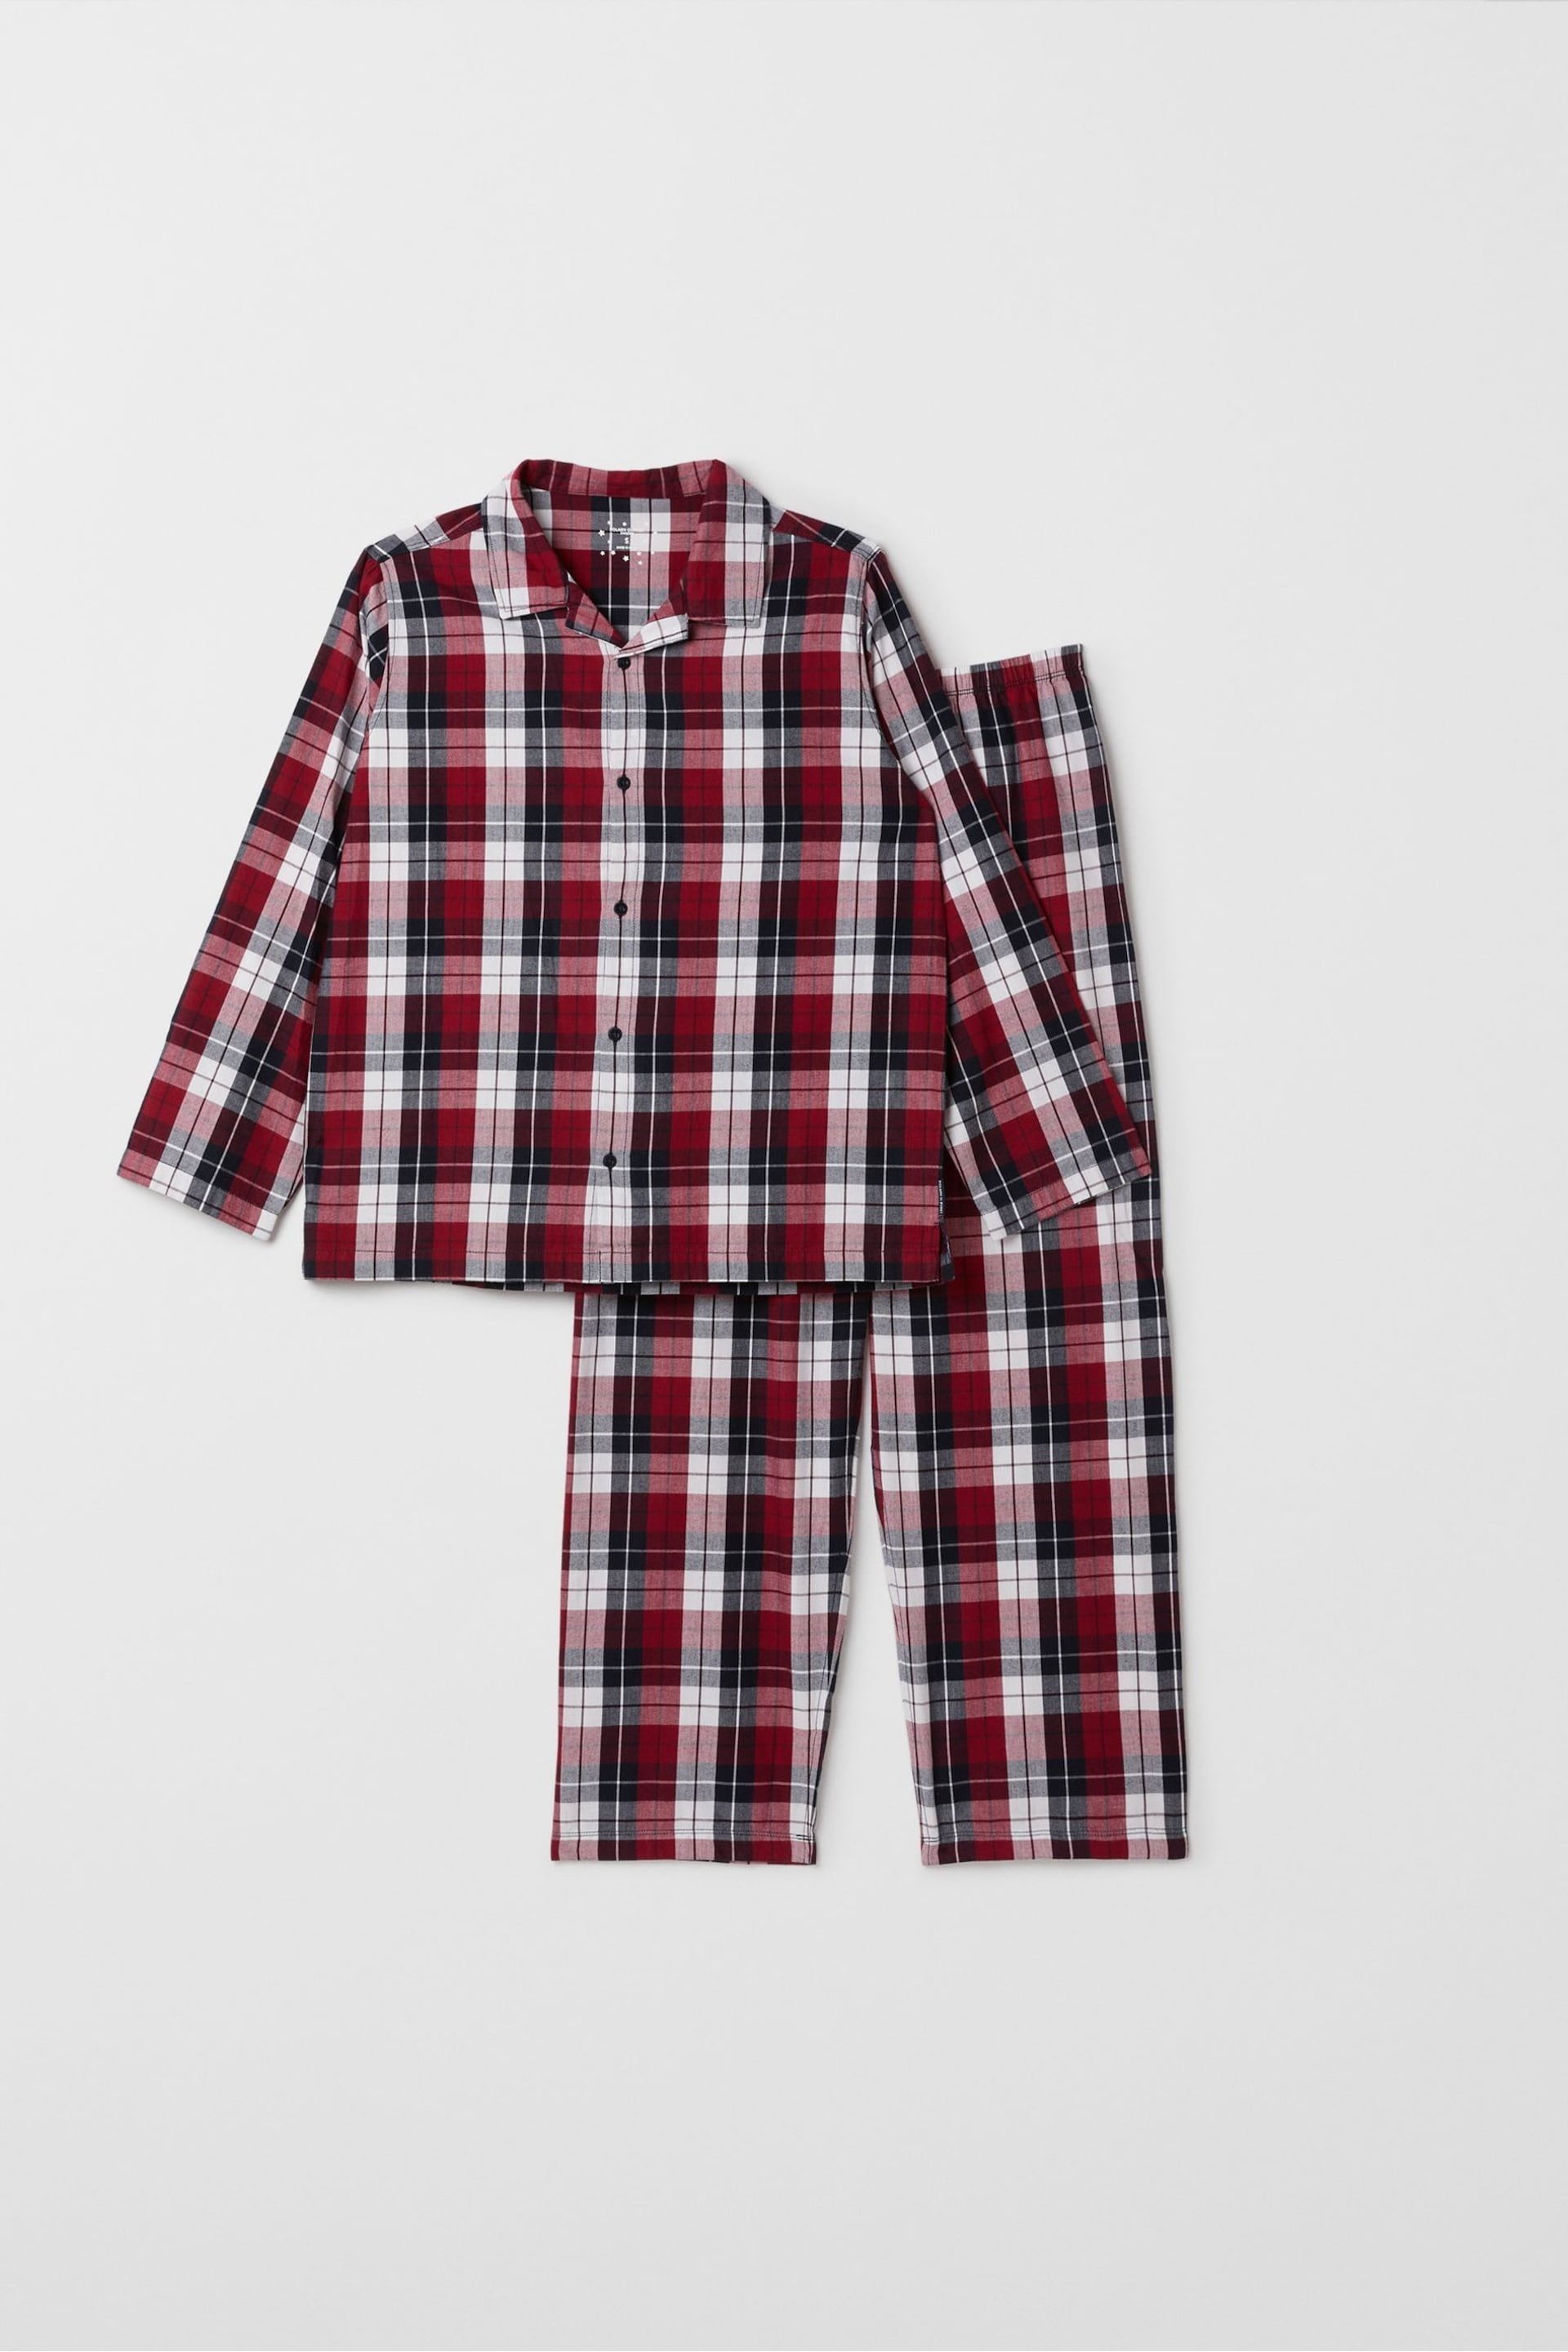 Polarn O Pyret Red Organic Checked Christmas Pyjamas - Image 1 of 4